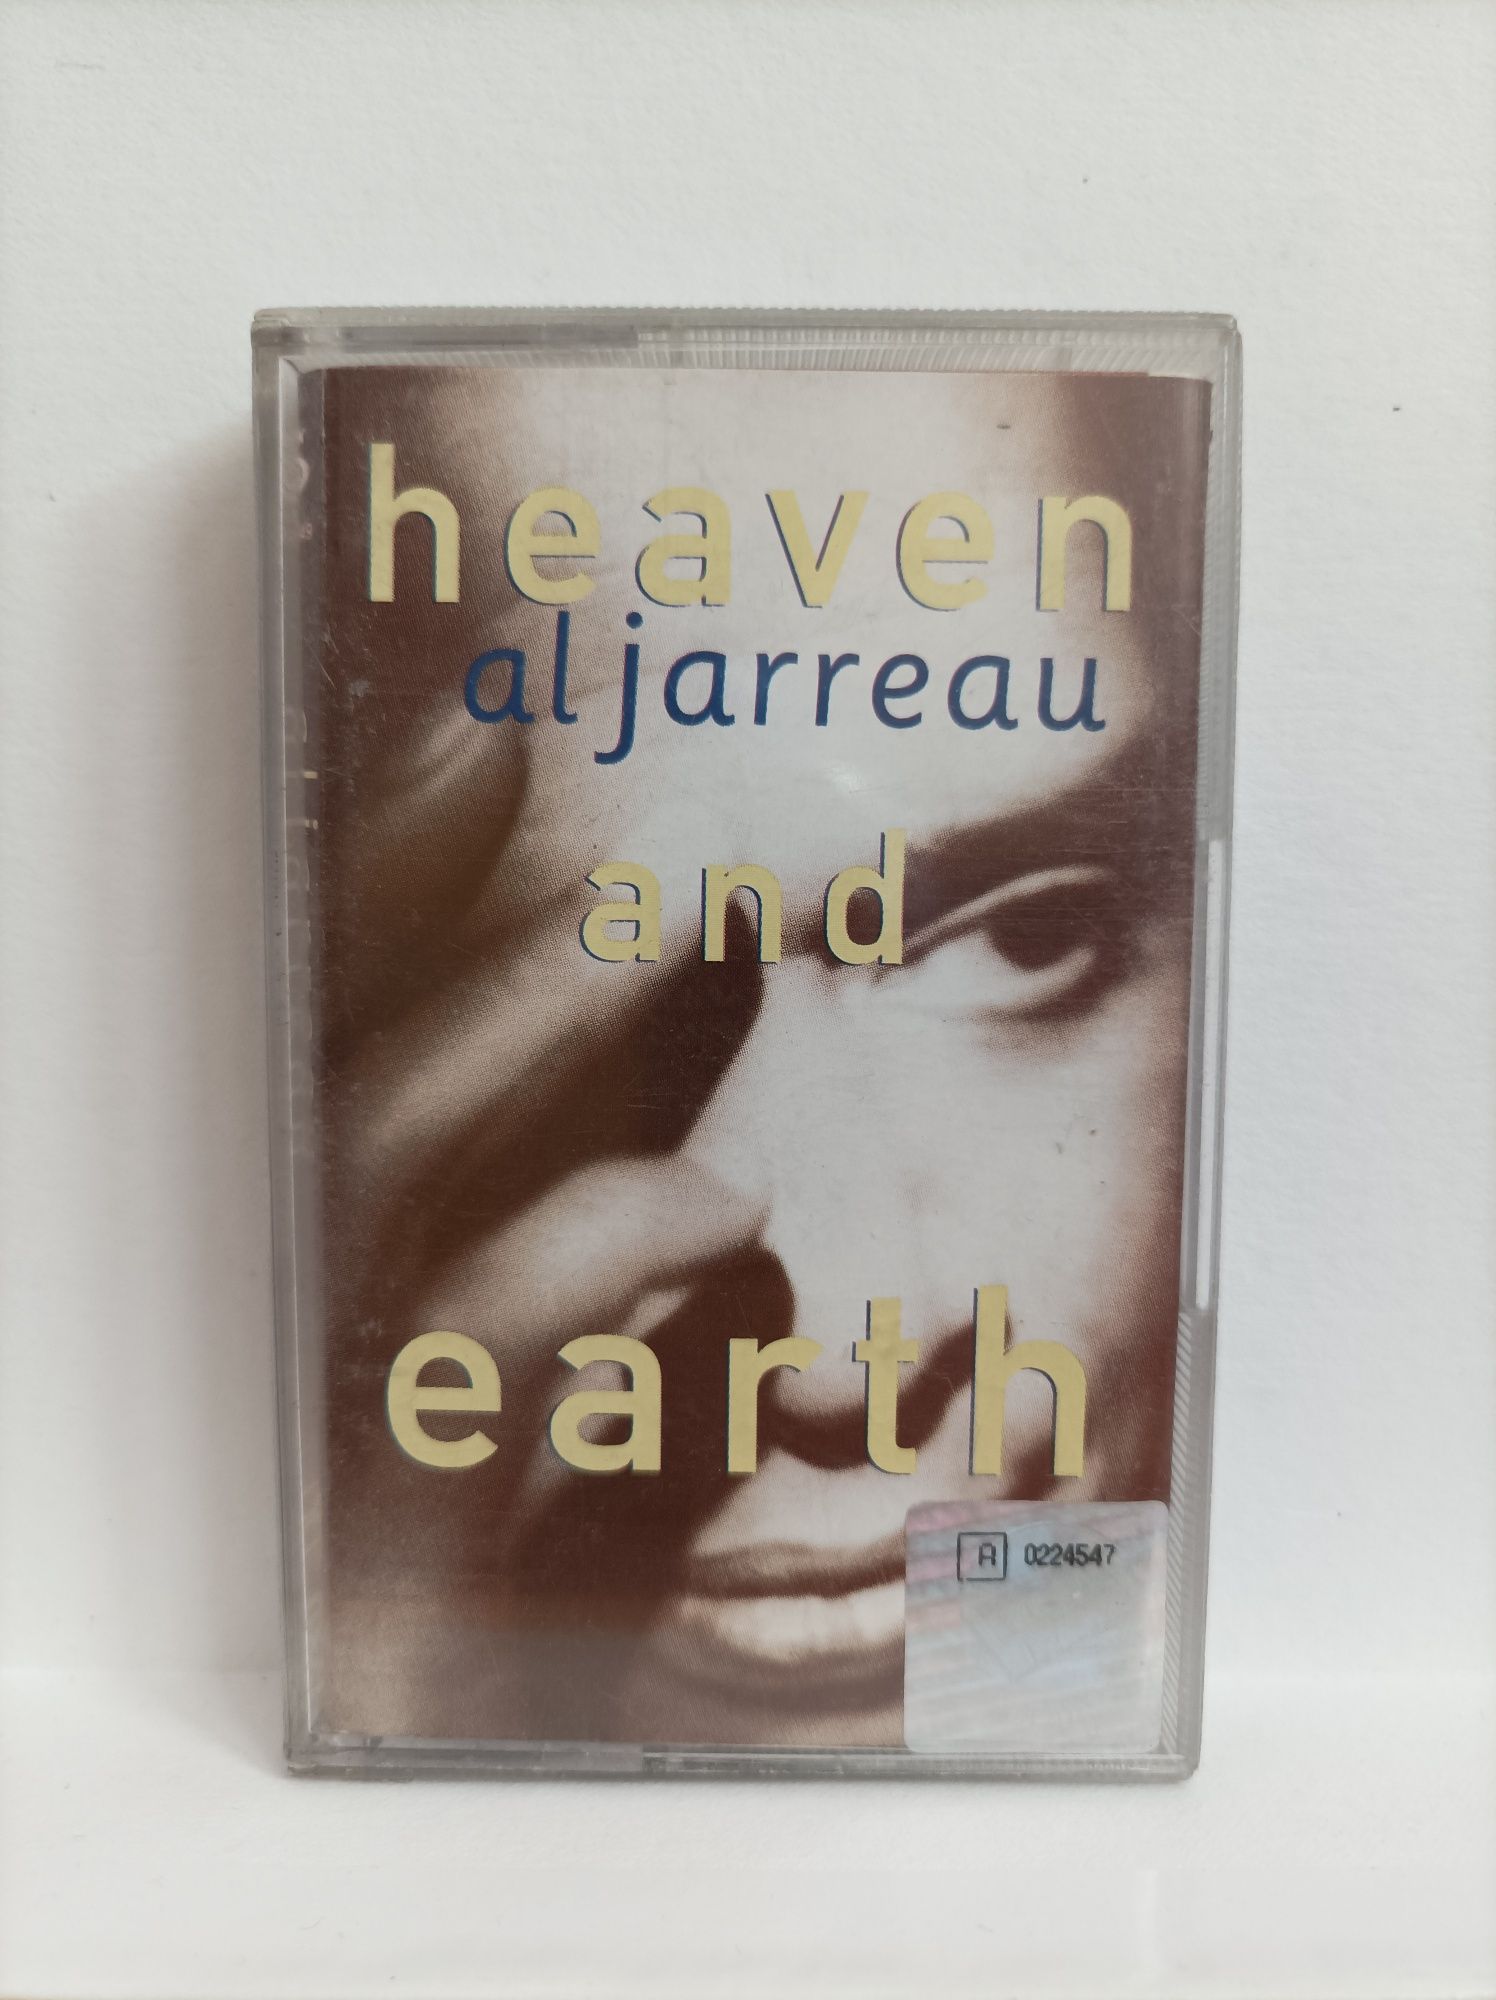 Al Jarreau - Heaven and earth, kaseta magnetofonowa